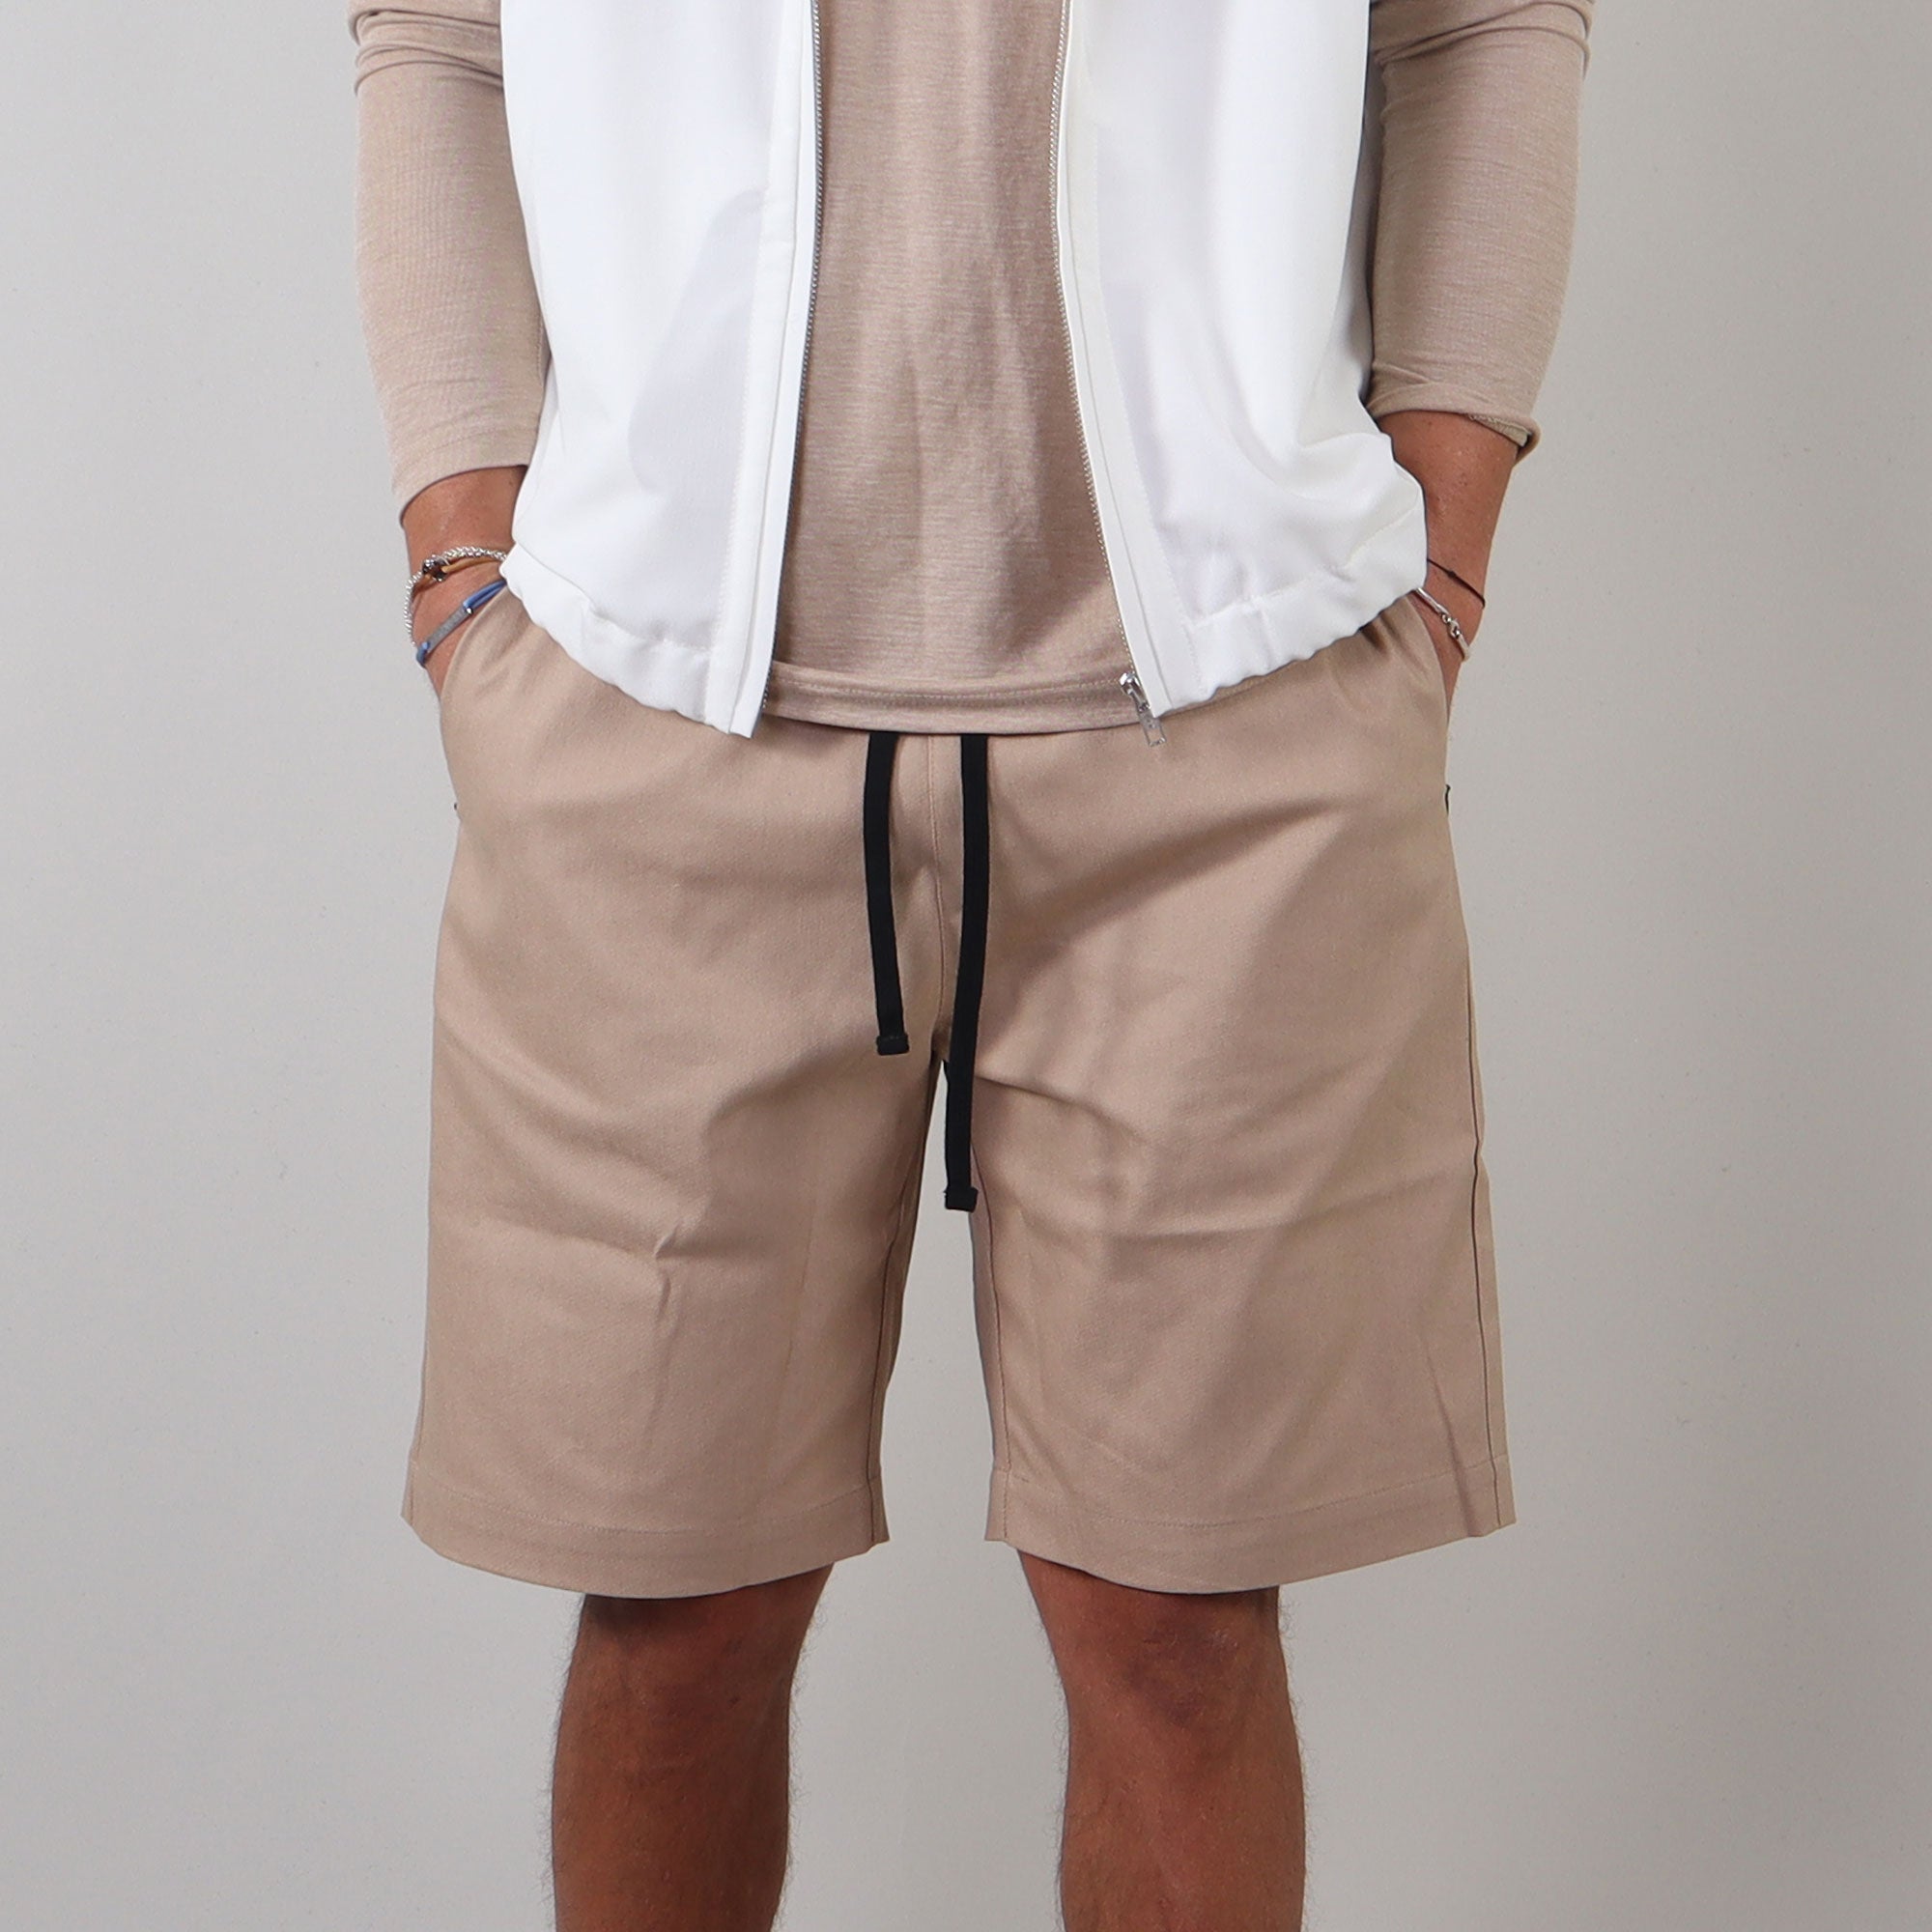 PRJCT light cotton denim shorts beige